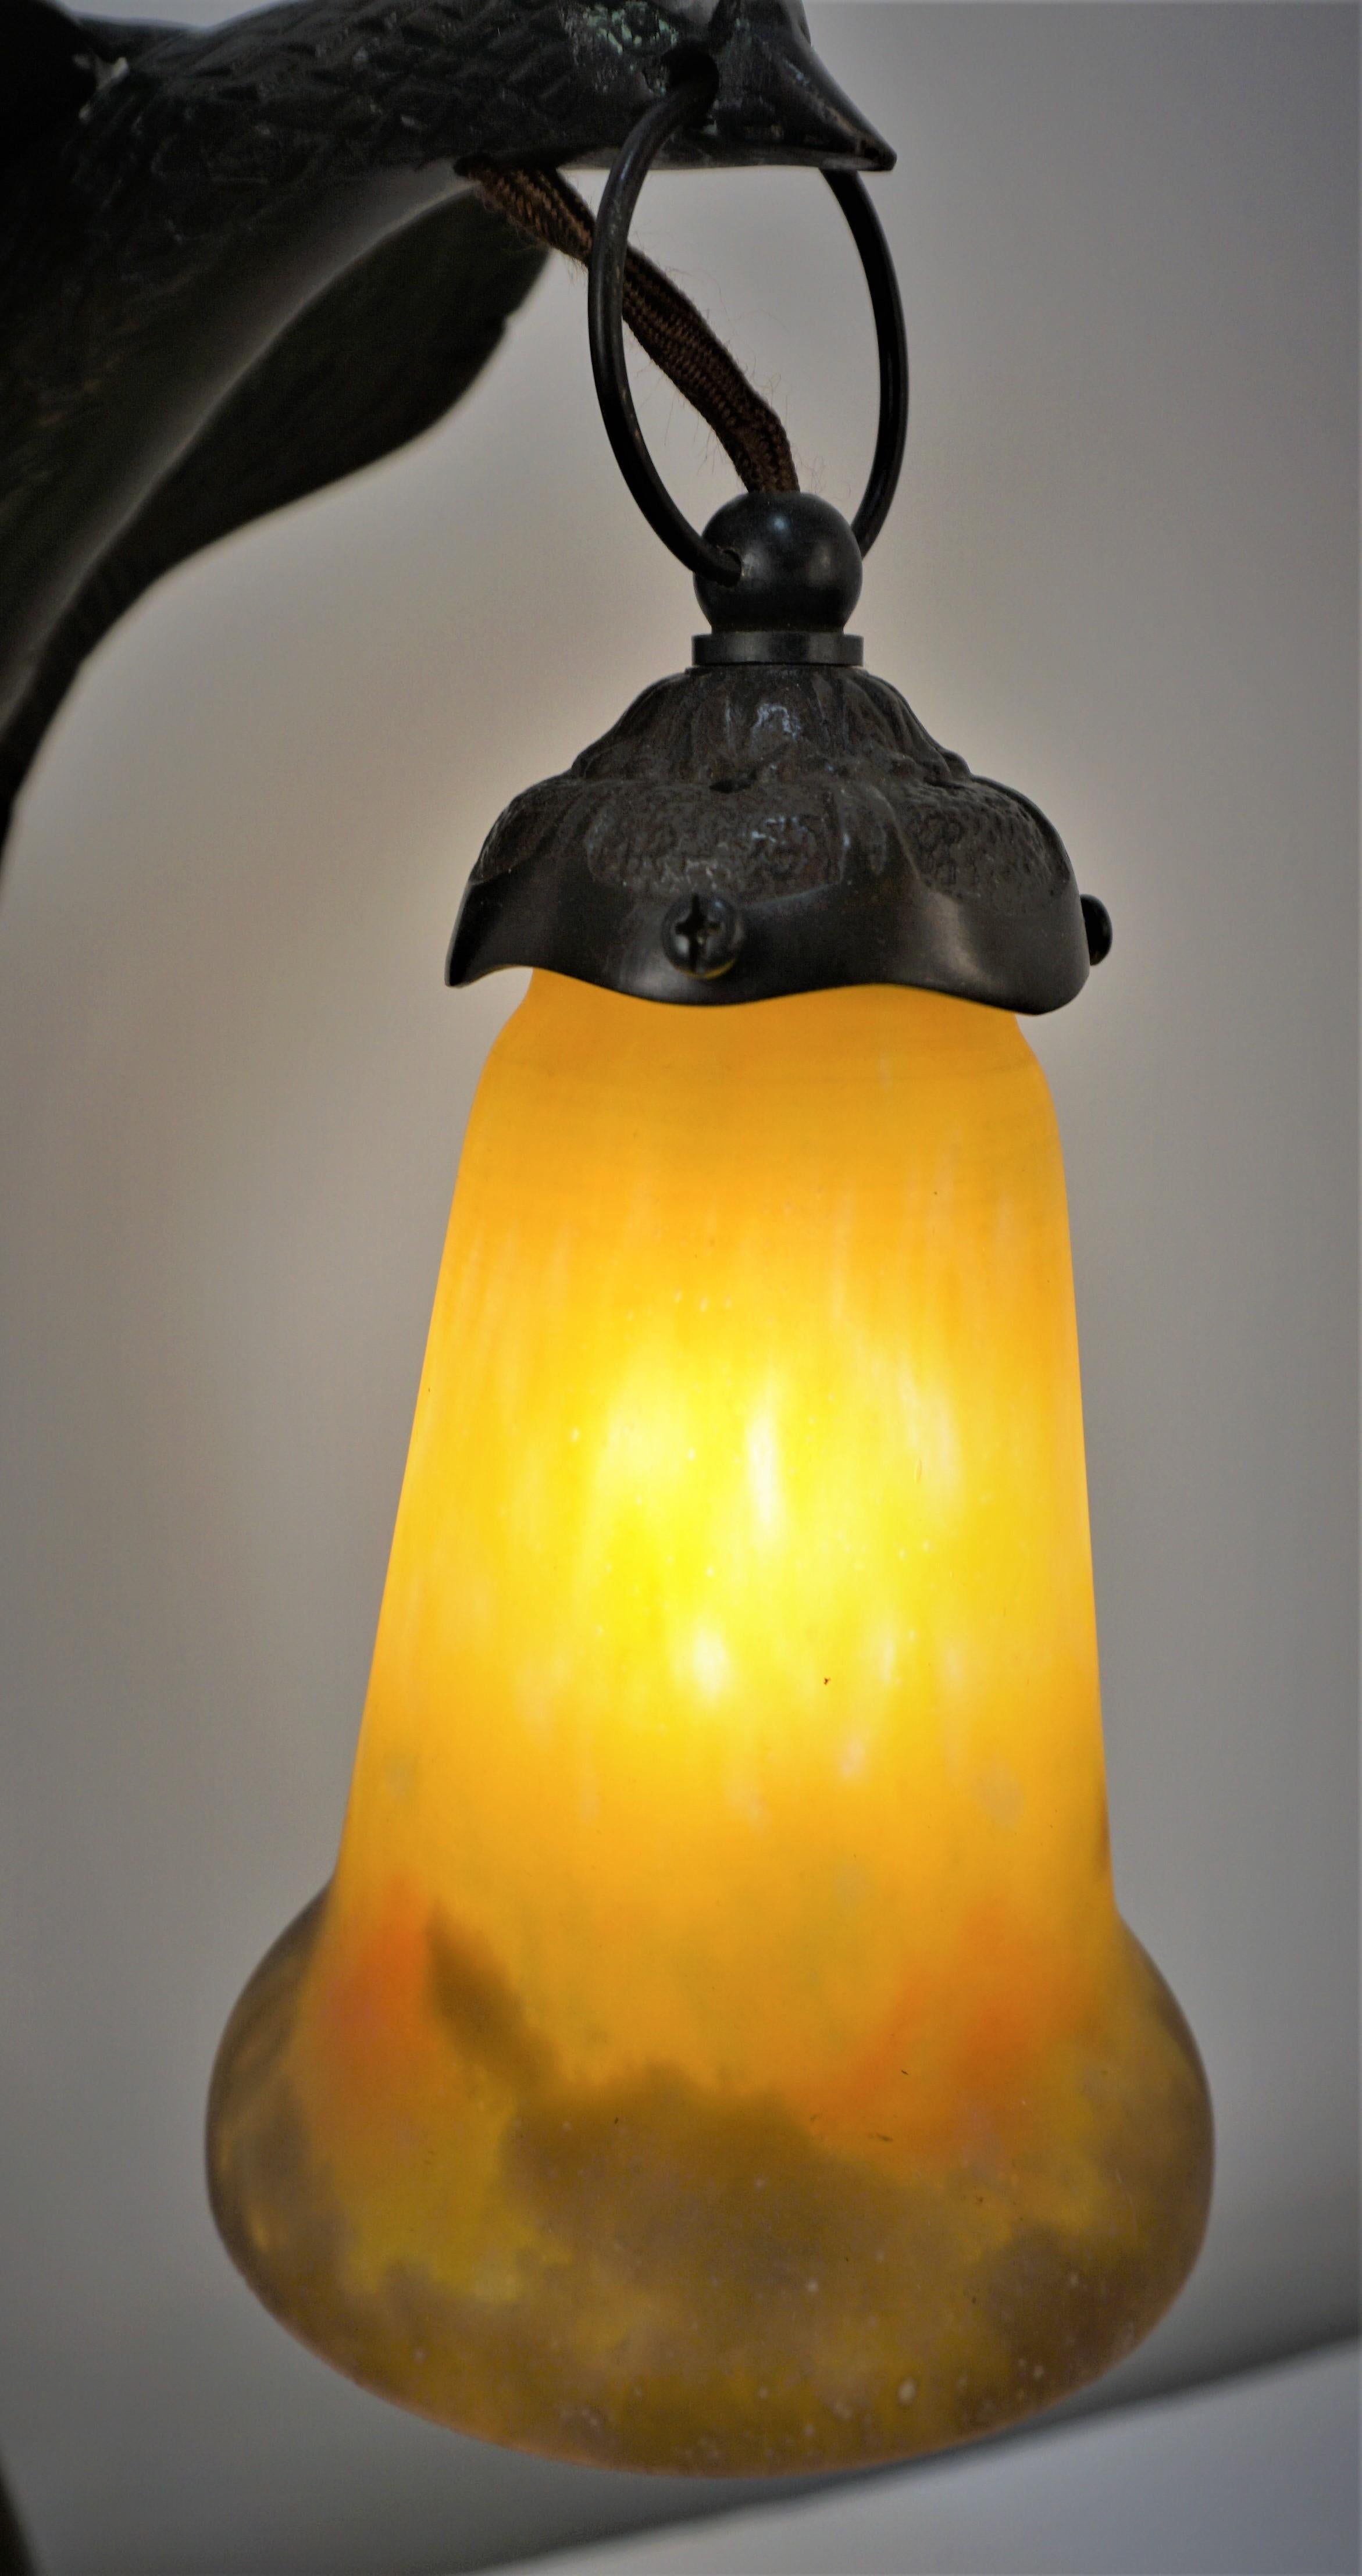 Lampe de table en bronze en forme d'oiseau avec abat-jour en verre soufflé, datant des années 1920.